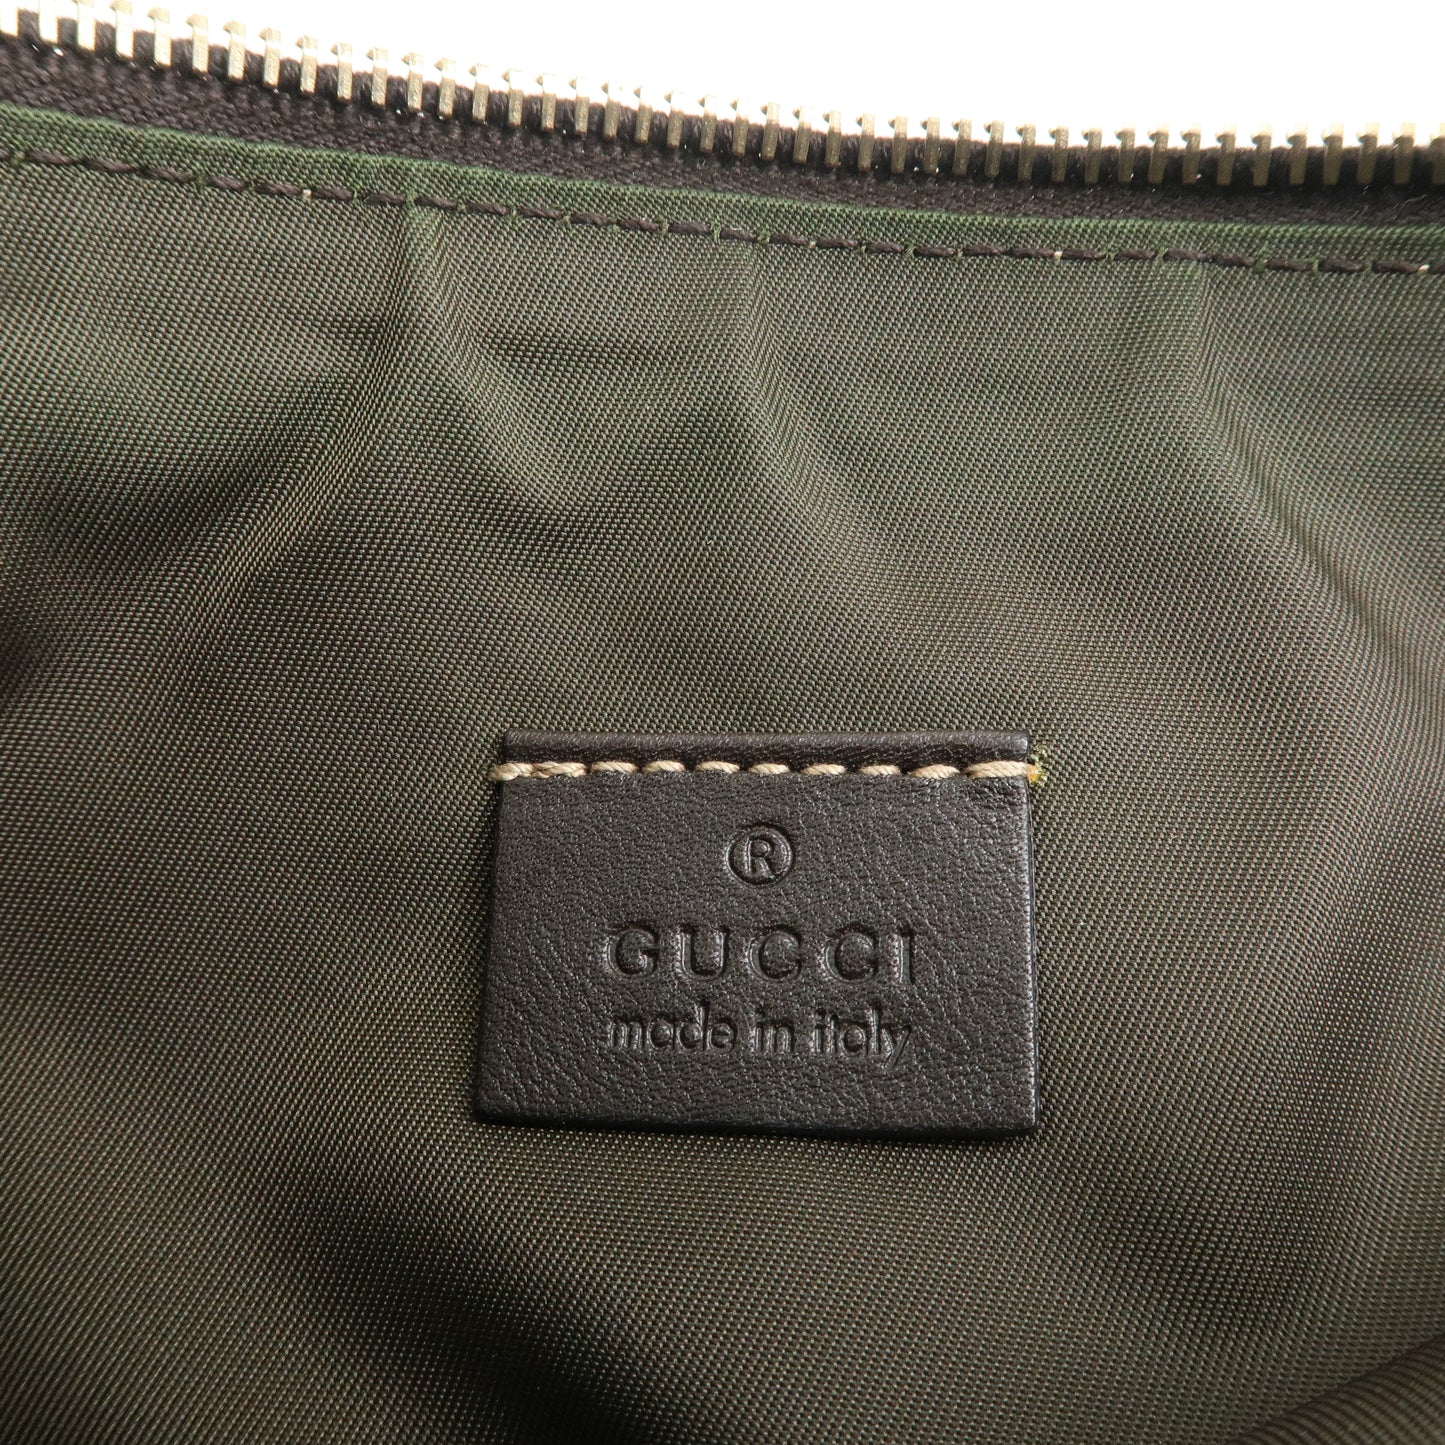 GUCCI GG Canvas Leather Shoulder Bag Hand Bag Beige Brown 212122